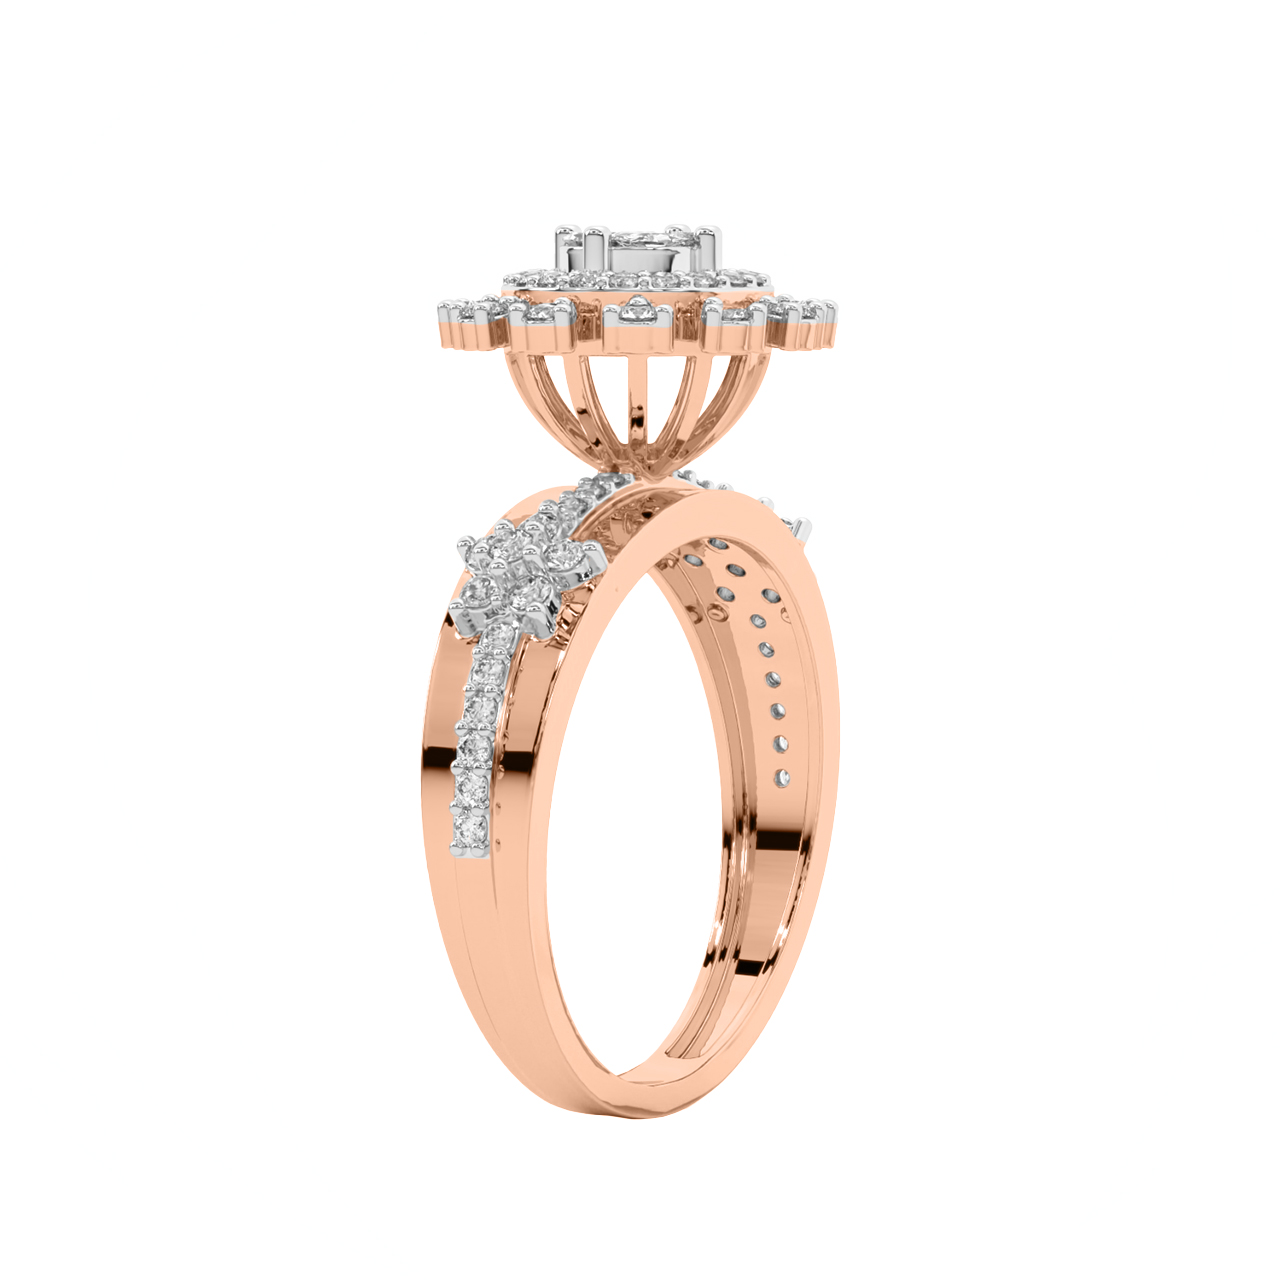 Sinai Round Diamond Engagement Ring